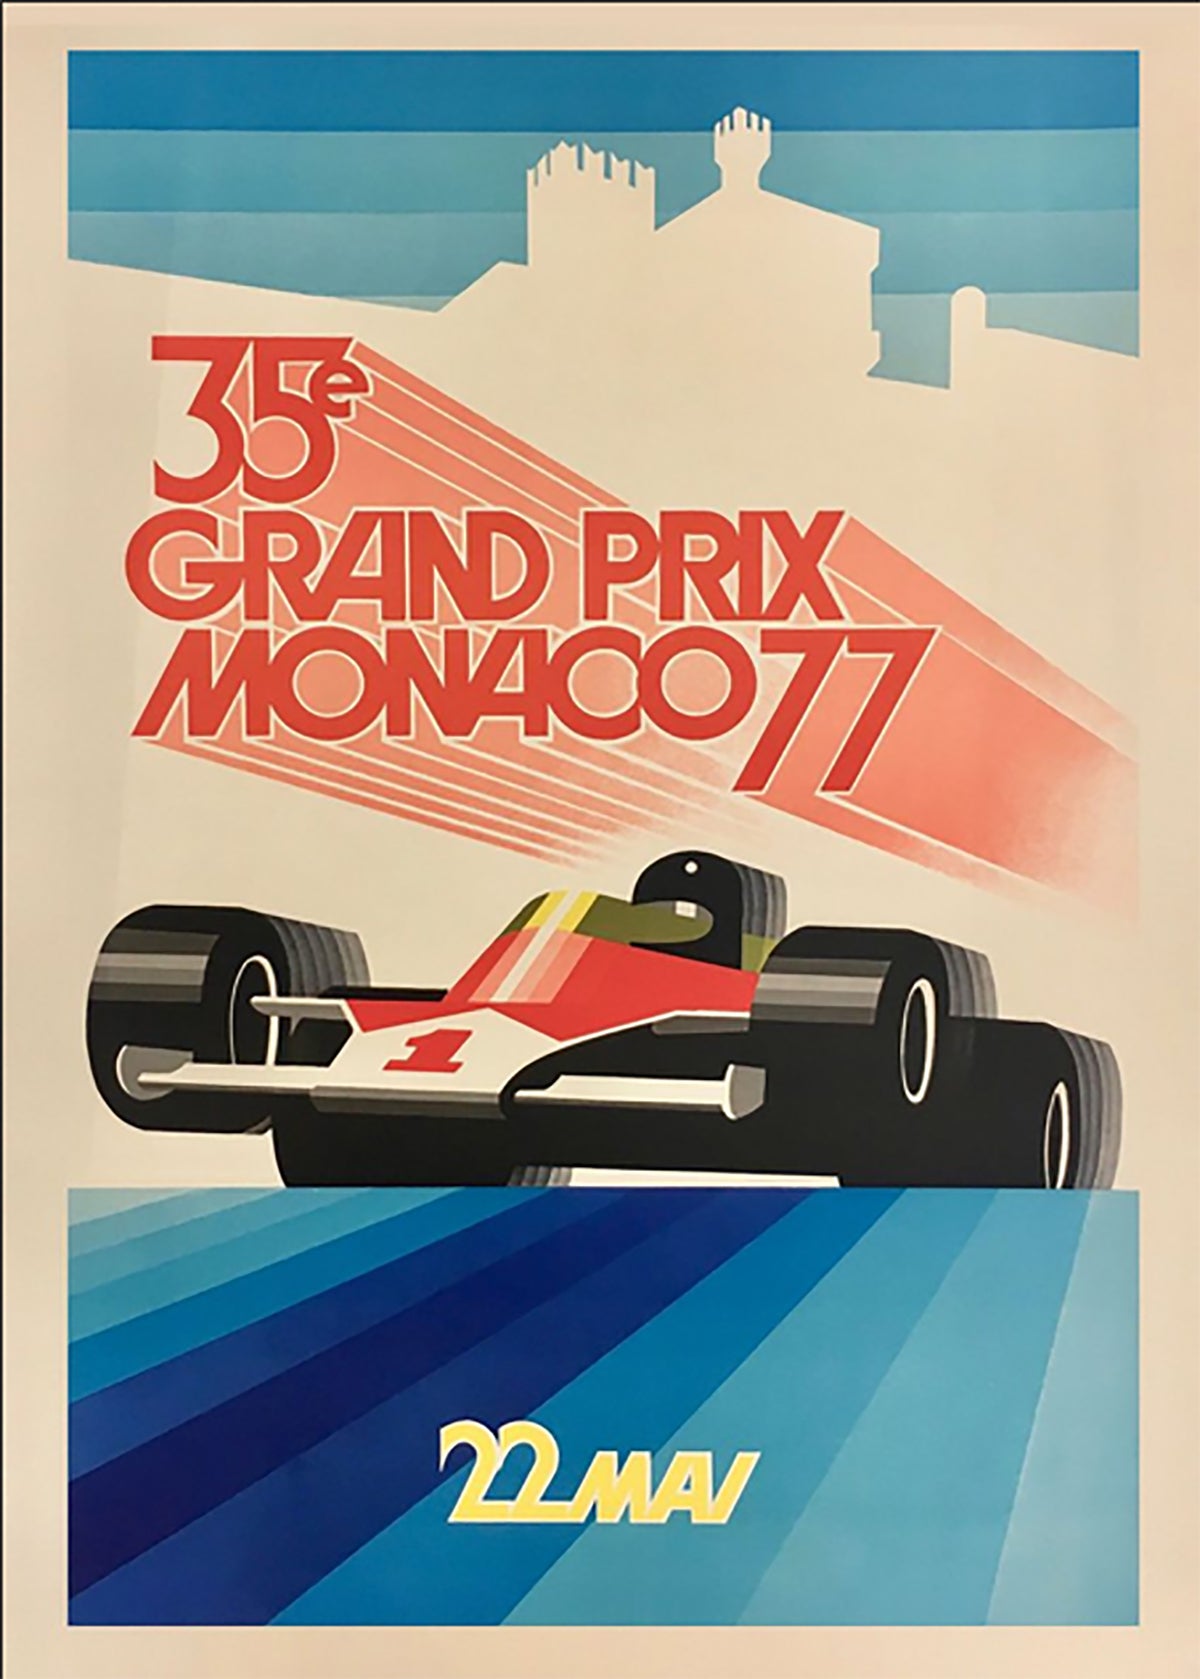 TPFLiving Poster Leinwand / Berühmte Rennen - Vintage - Großer Preis von Monaco 9. Mai 1970 / Verschiedene Größen - OHNE Rahmen - Modell 8